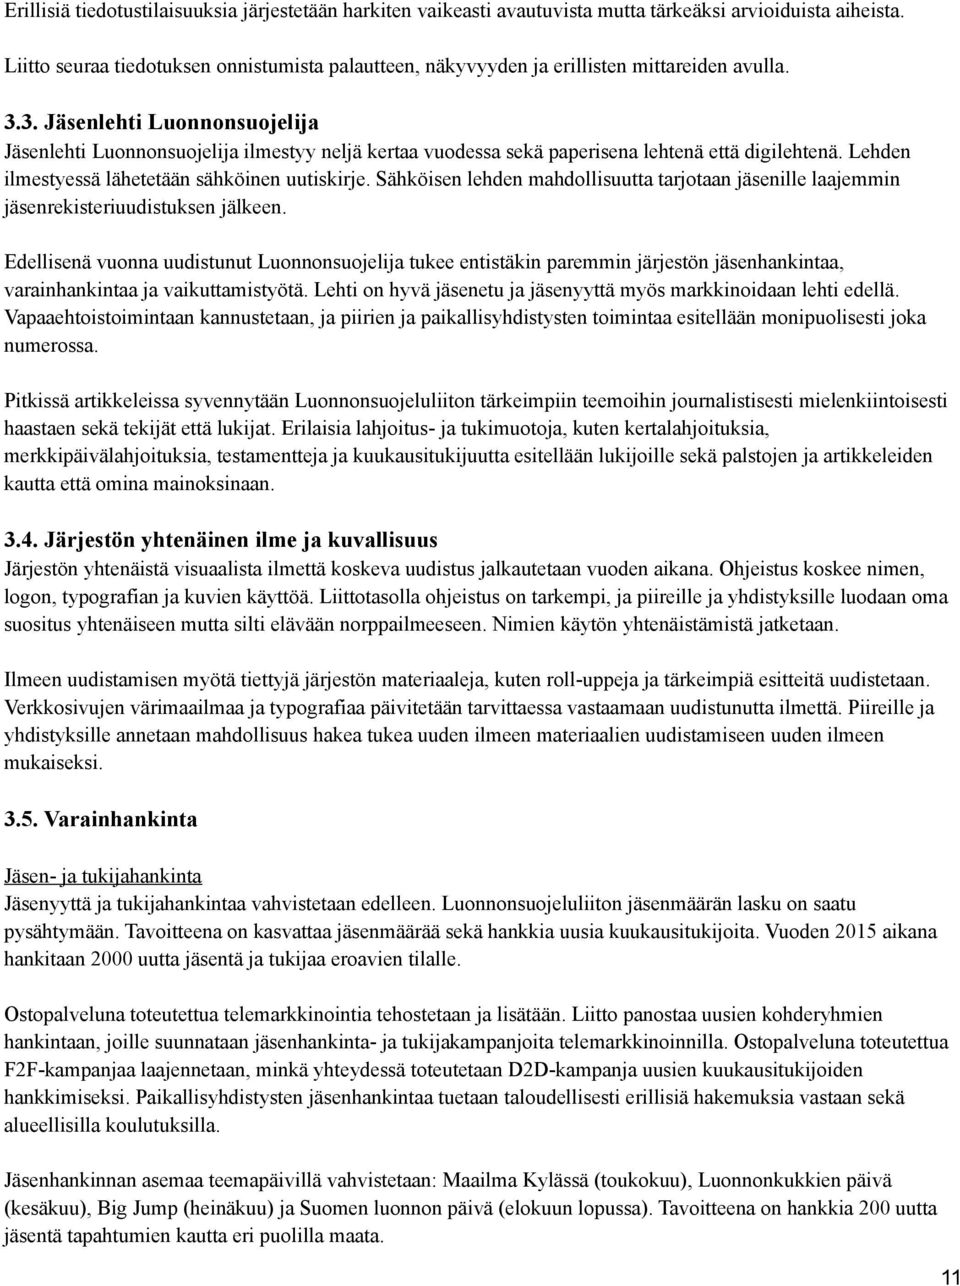 3. Jäsenlehti Luonnonsuojelija Jäsenlehti Luonnonsuojelija ilmestyy neljä kertaa vuodessa sekä paperisena lehtenä että digilehtenä. Lehden ilmestyessä lähetetään sähköinen uutiskirje.